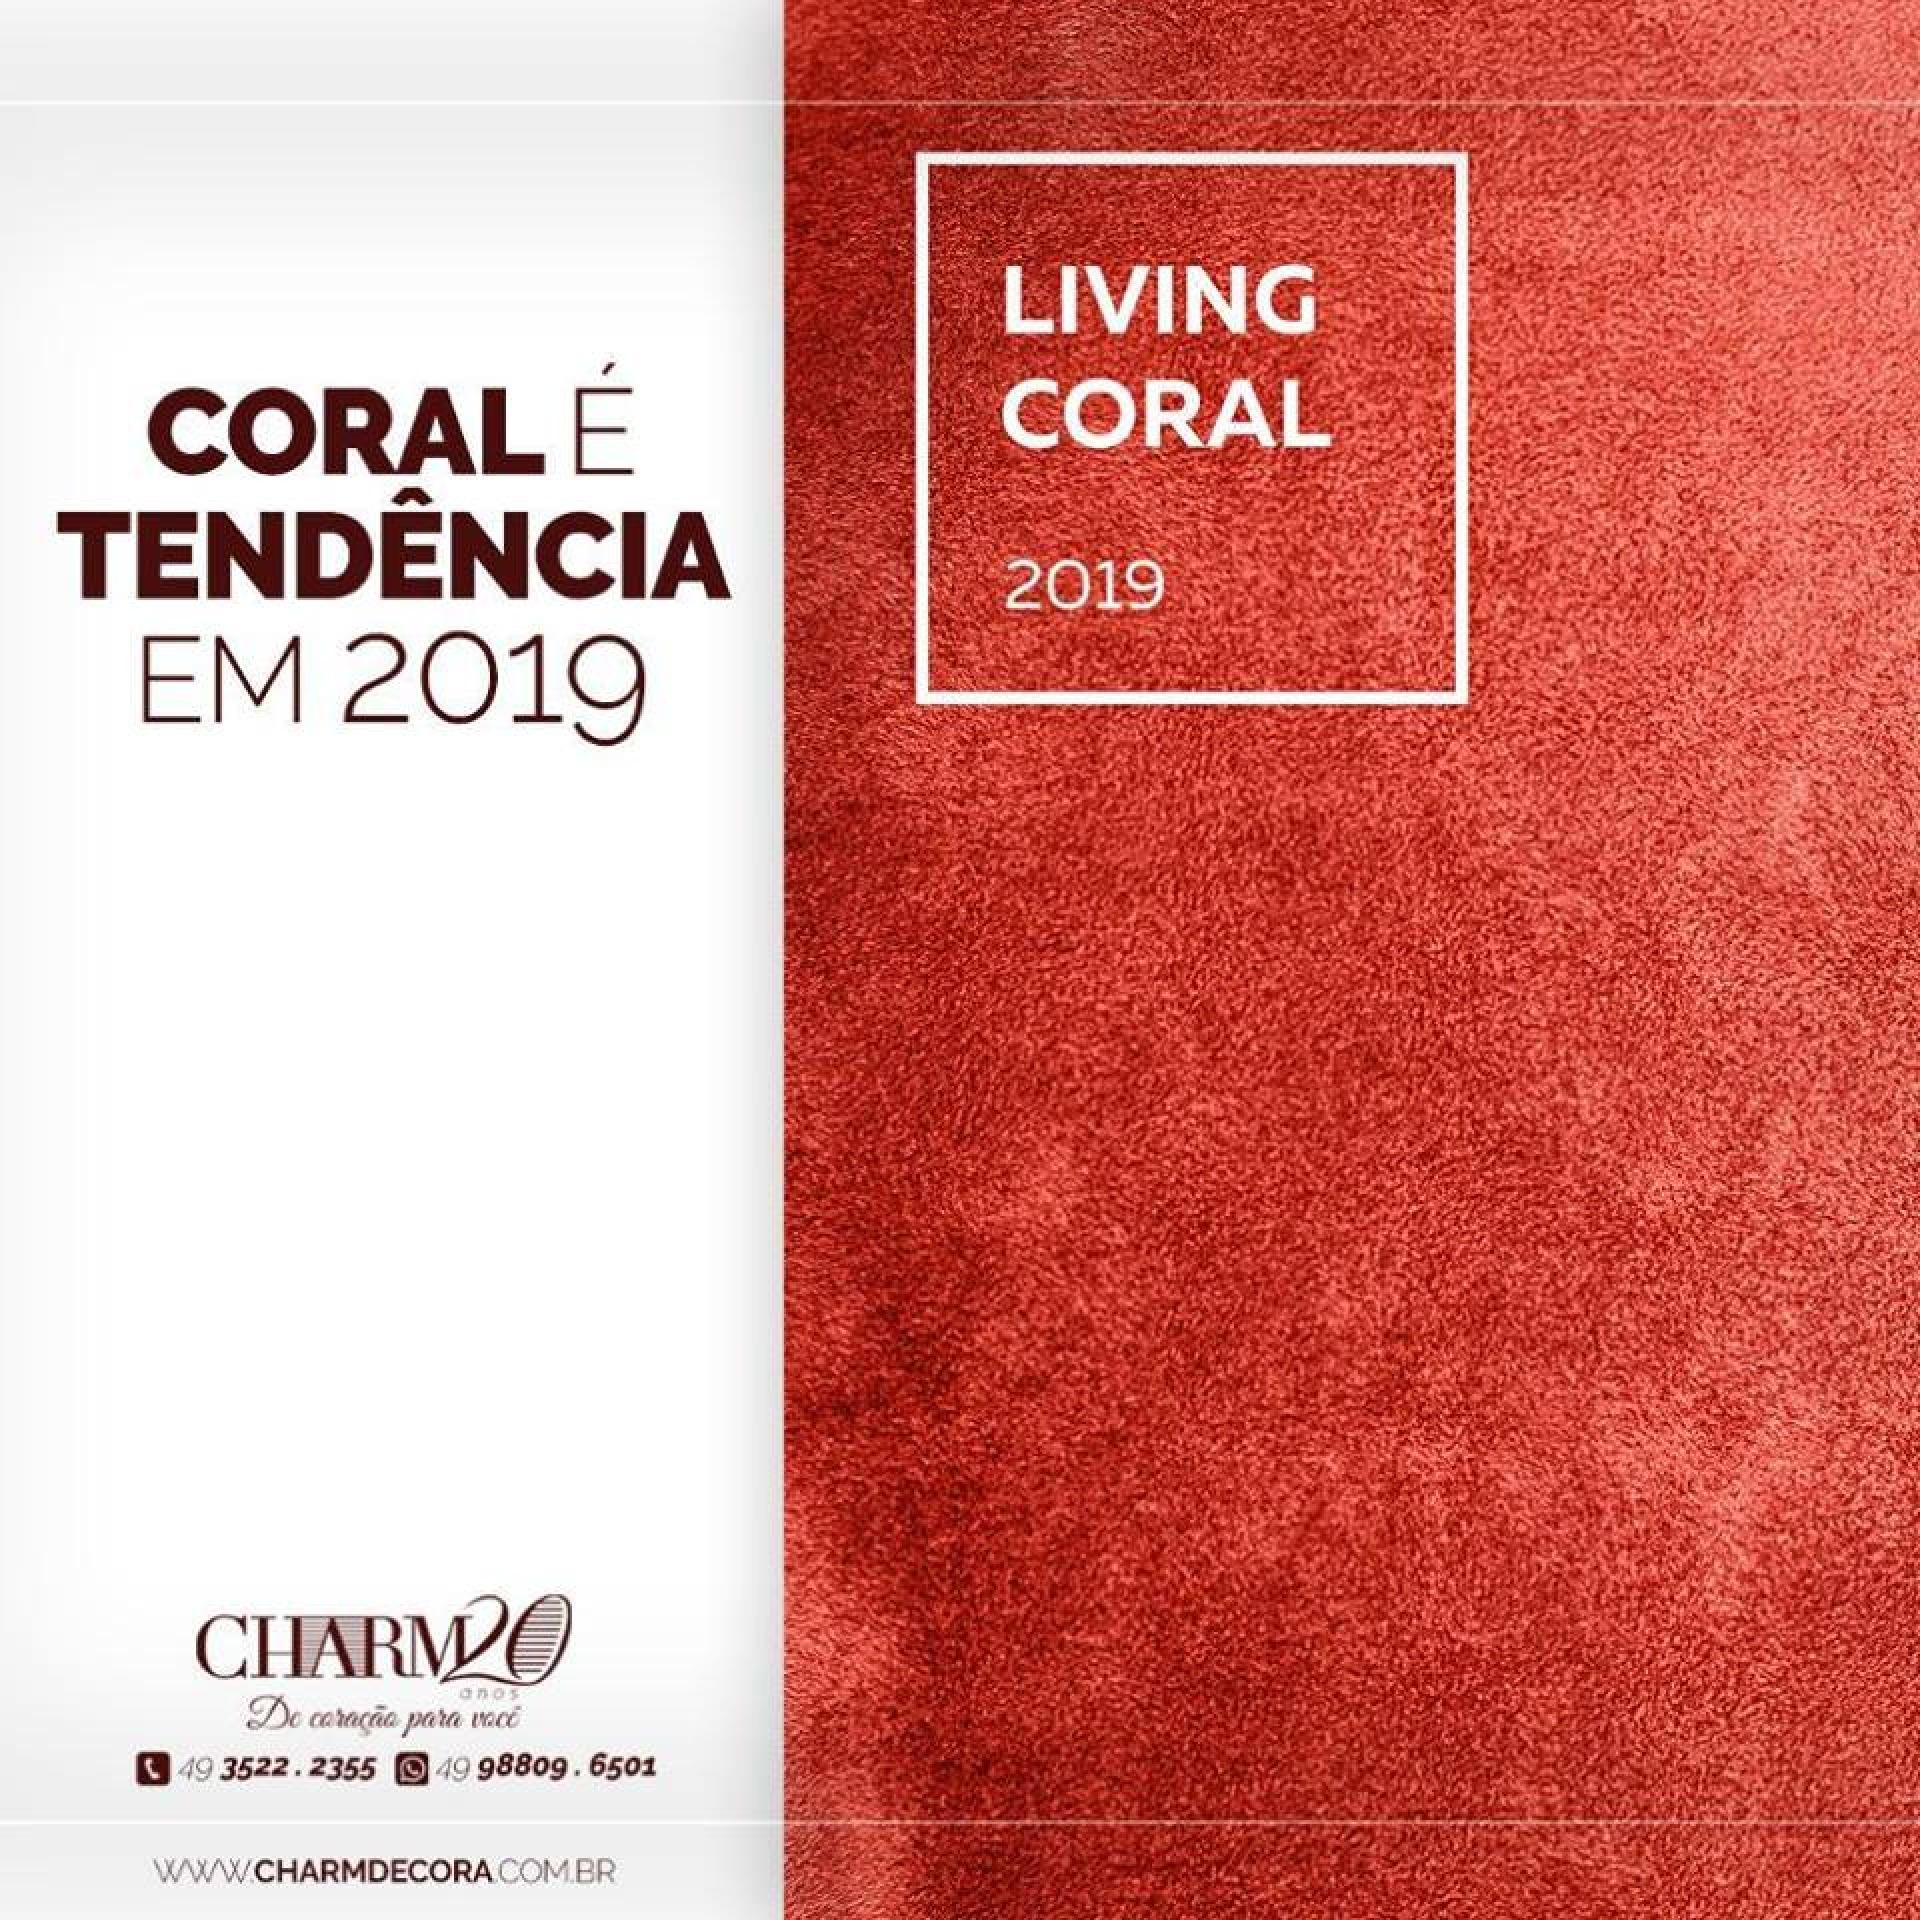 Coral é tendência em 2019